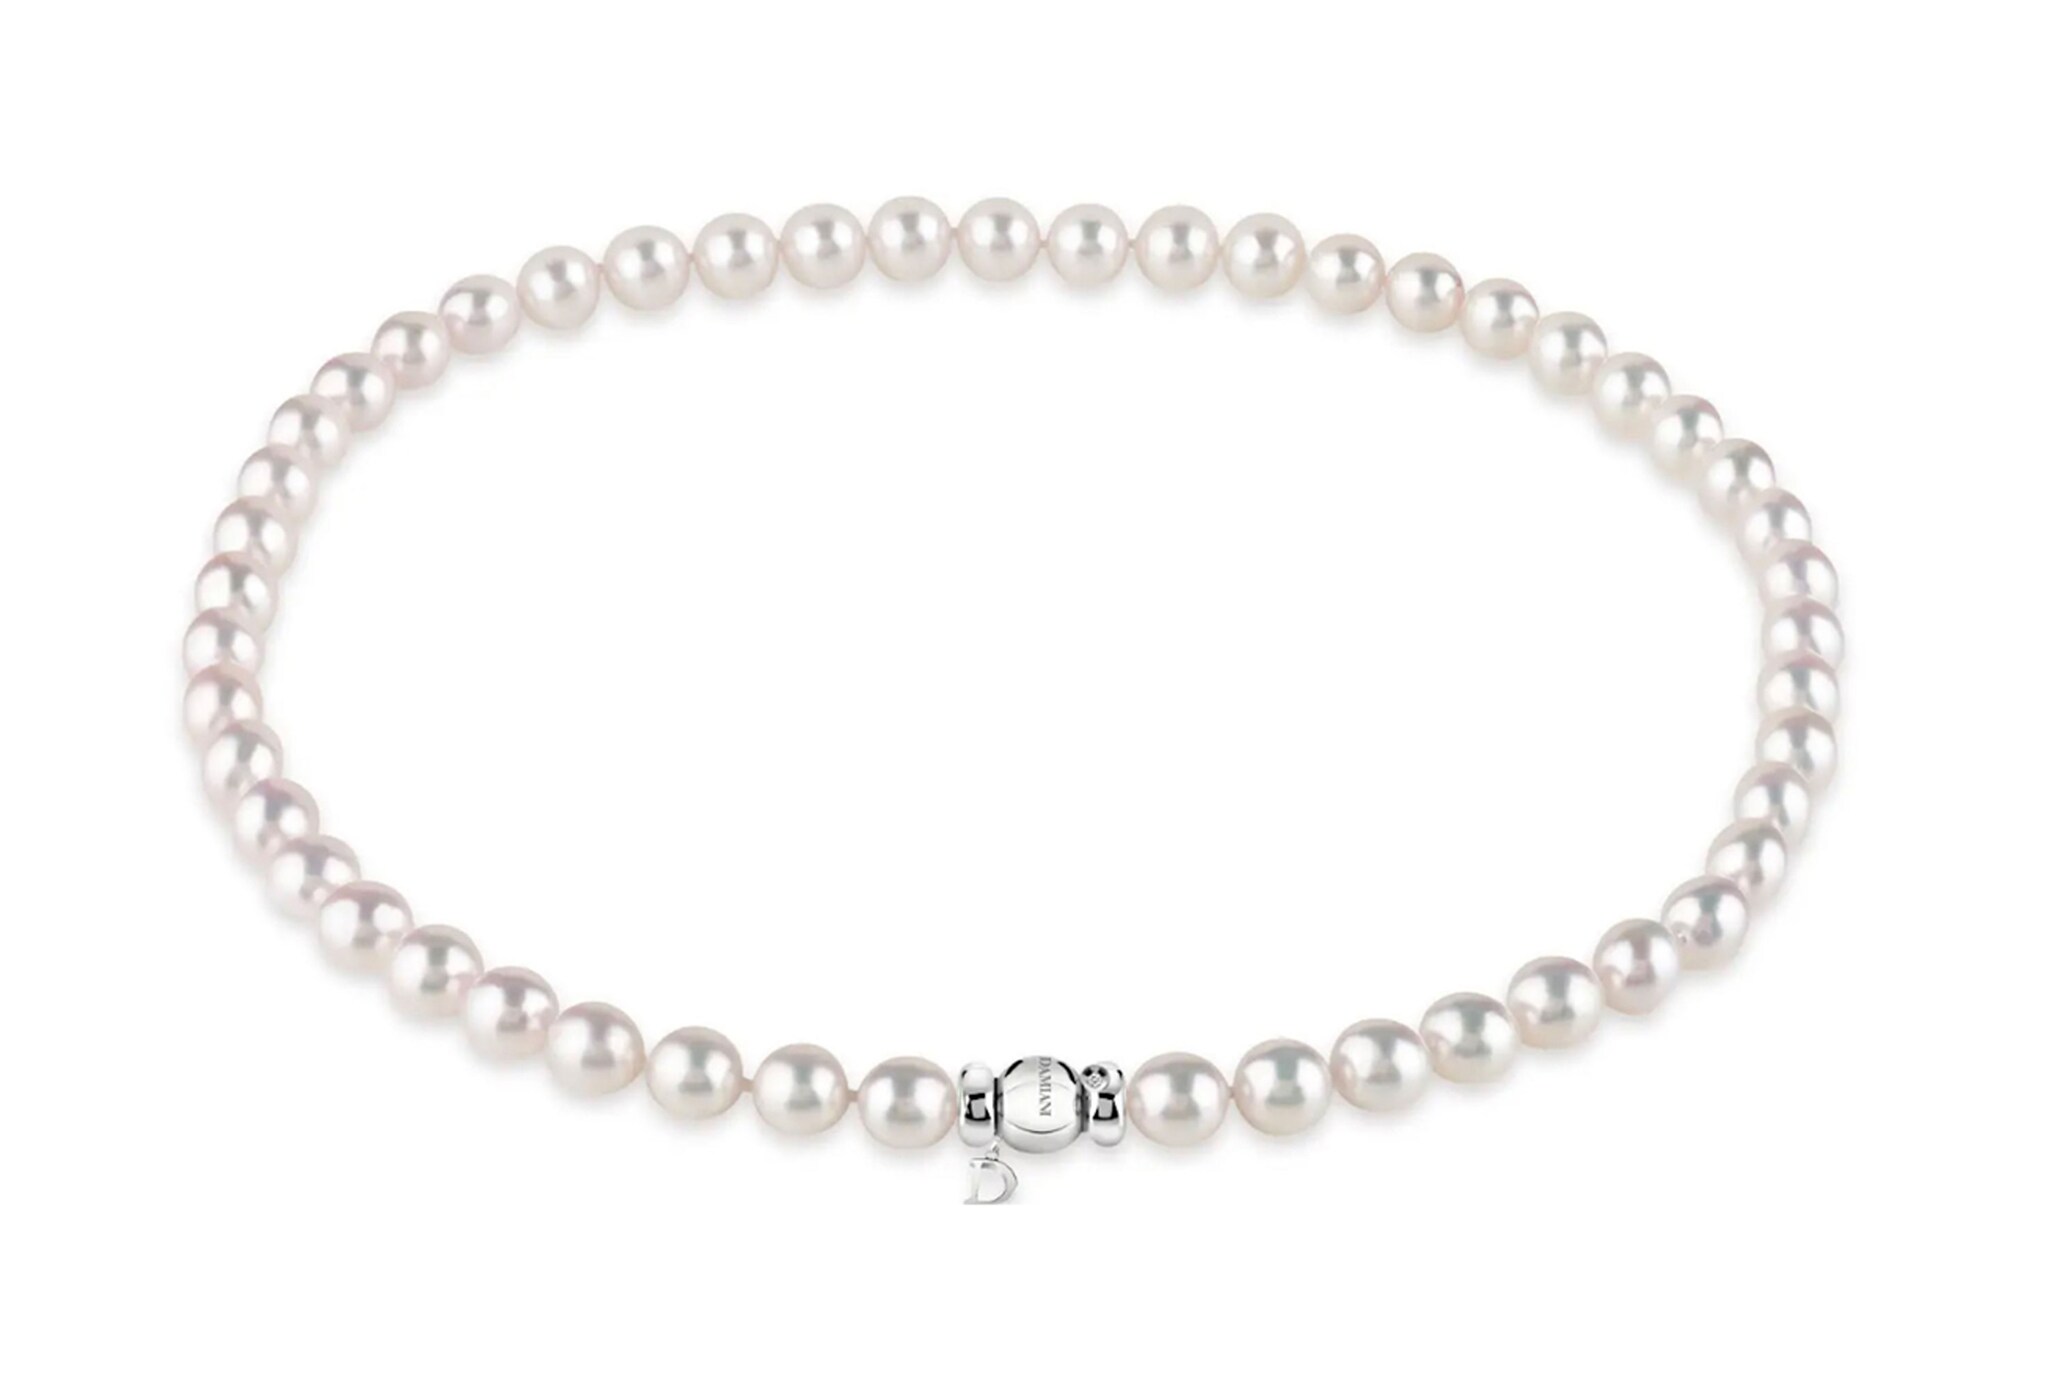 Damiani. Eleganza classica per questo girocollo in perle pure white con chiusura a sfera in oro bianco.